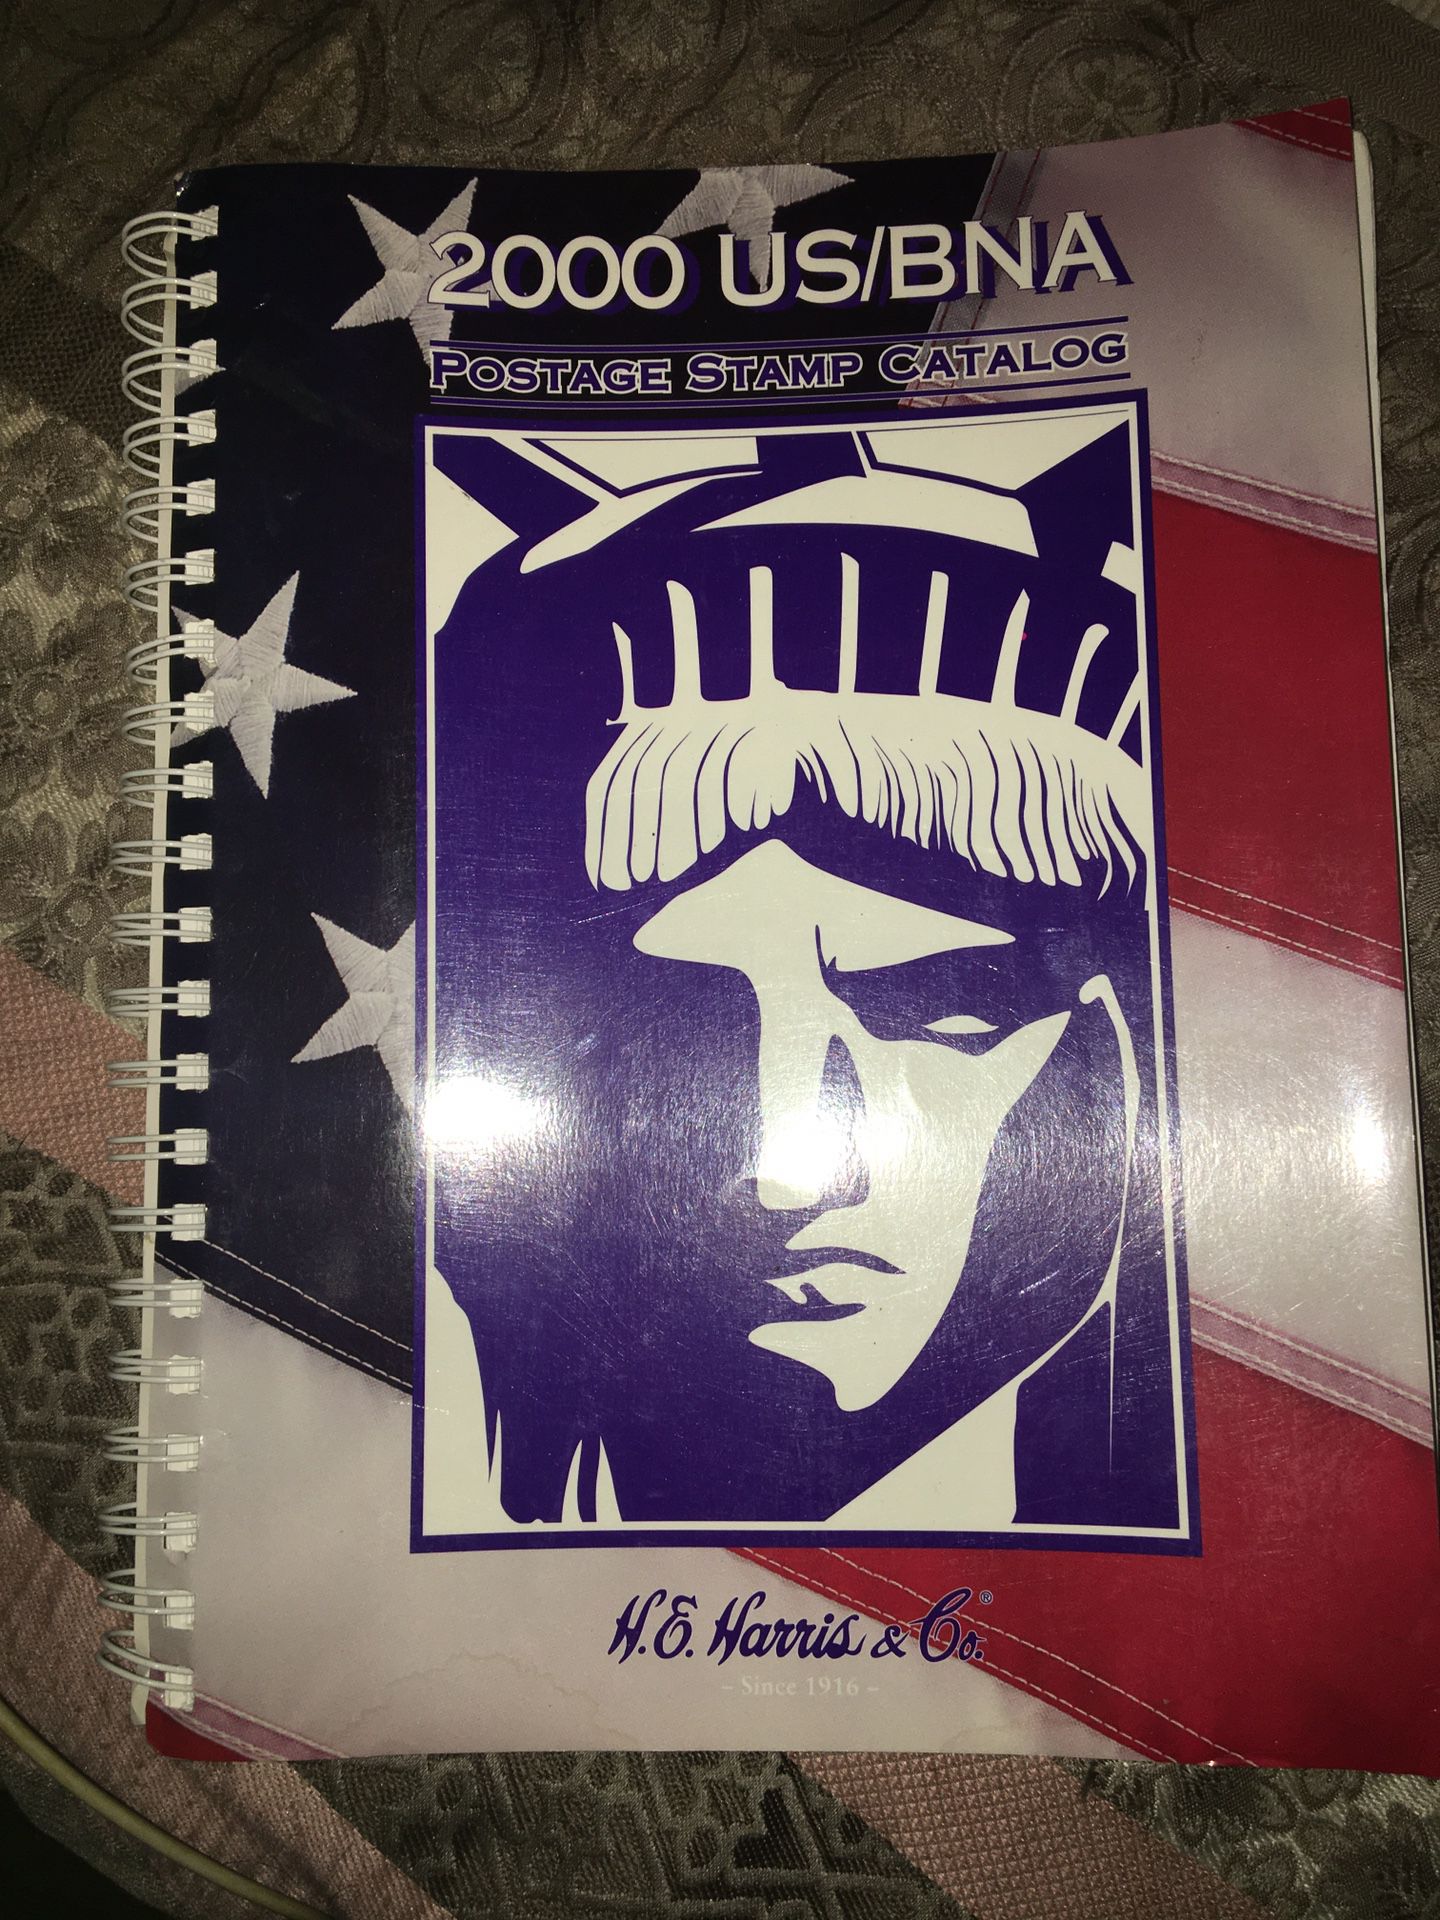 2000 US/BNA Postage Stamp Catalog